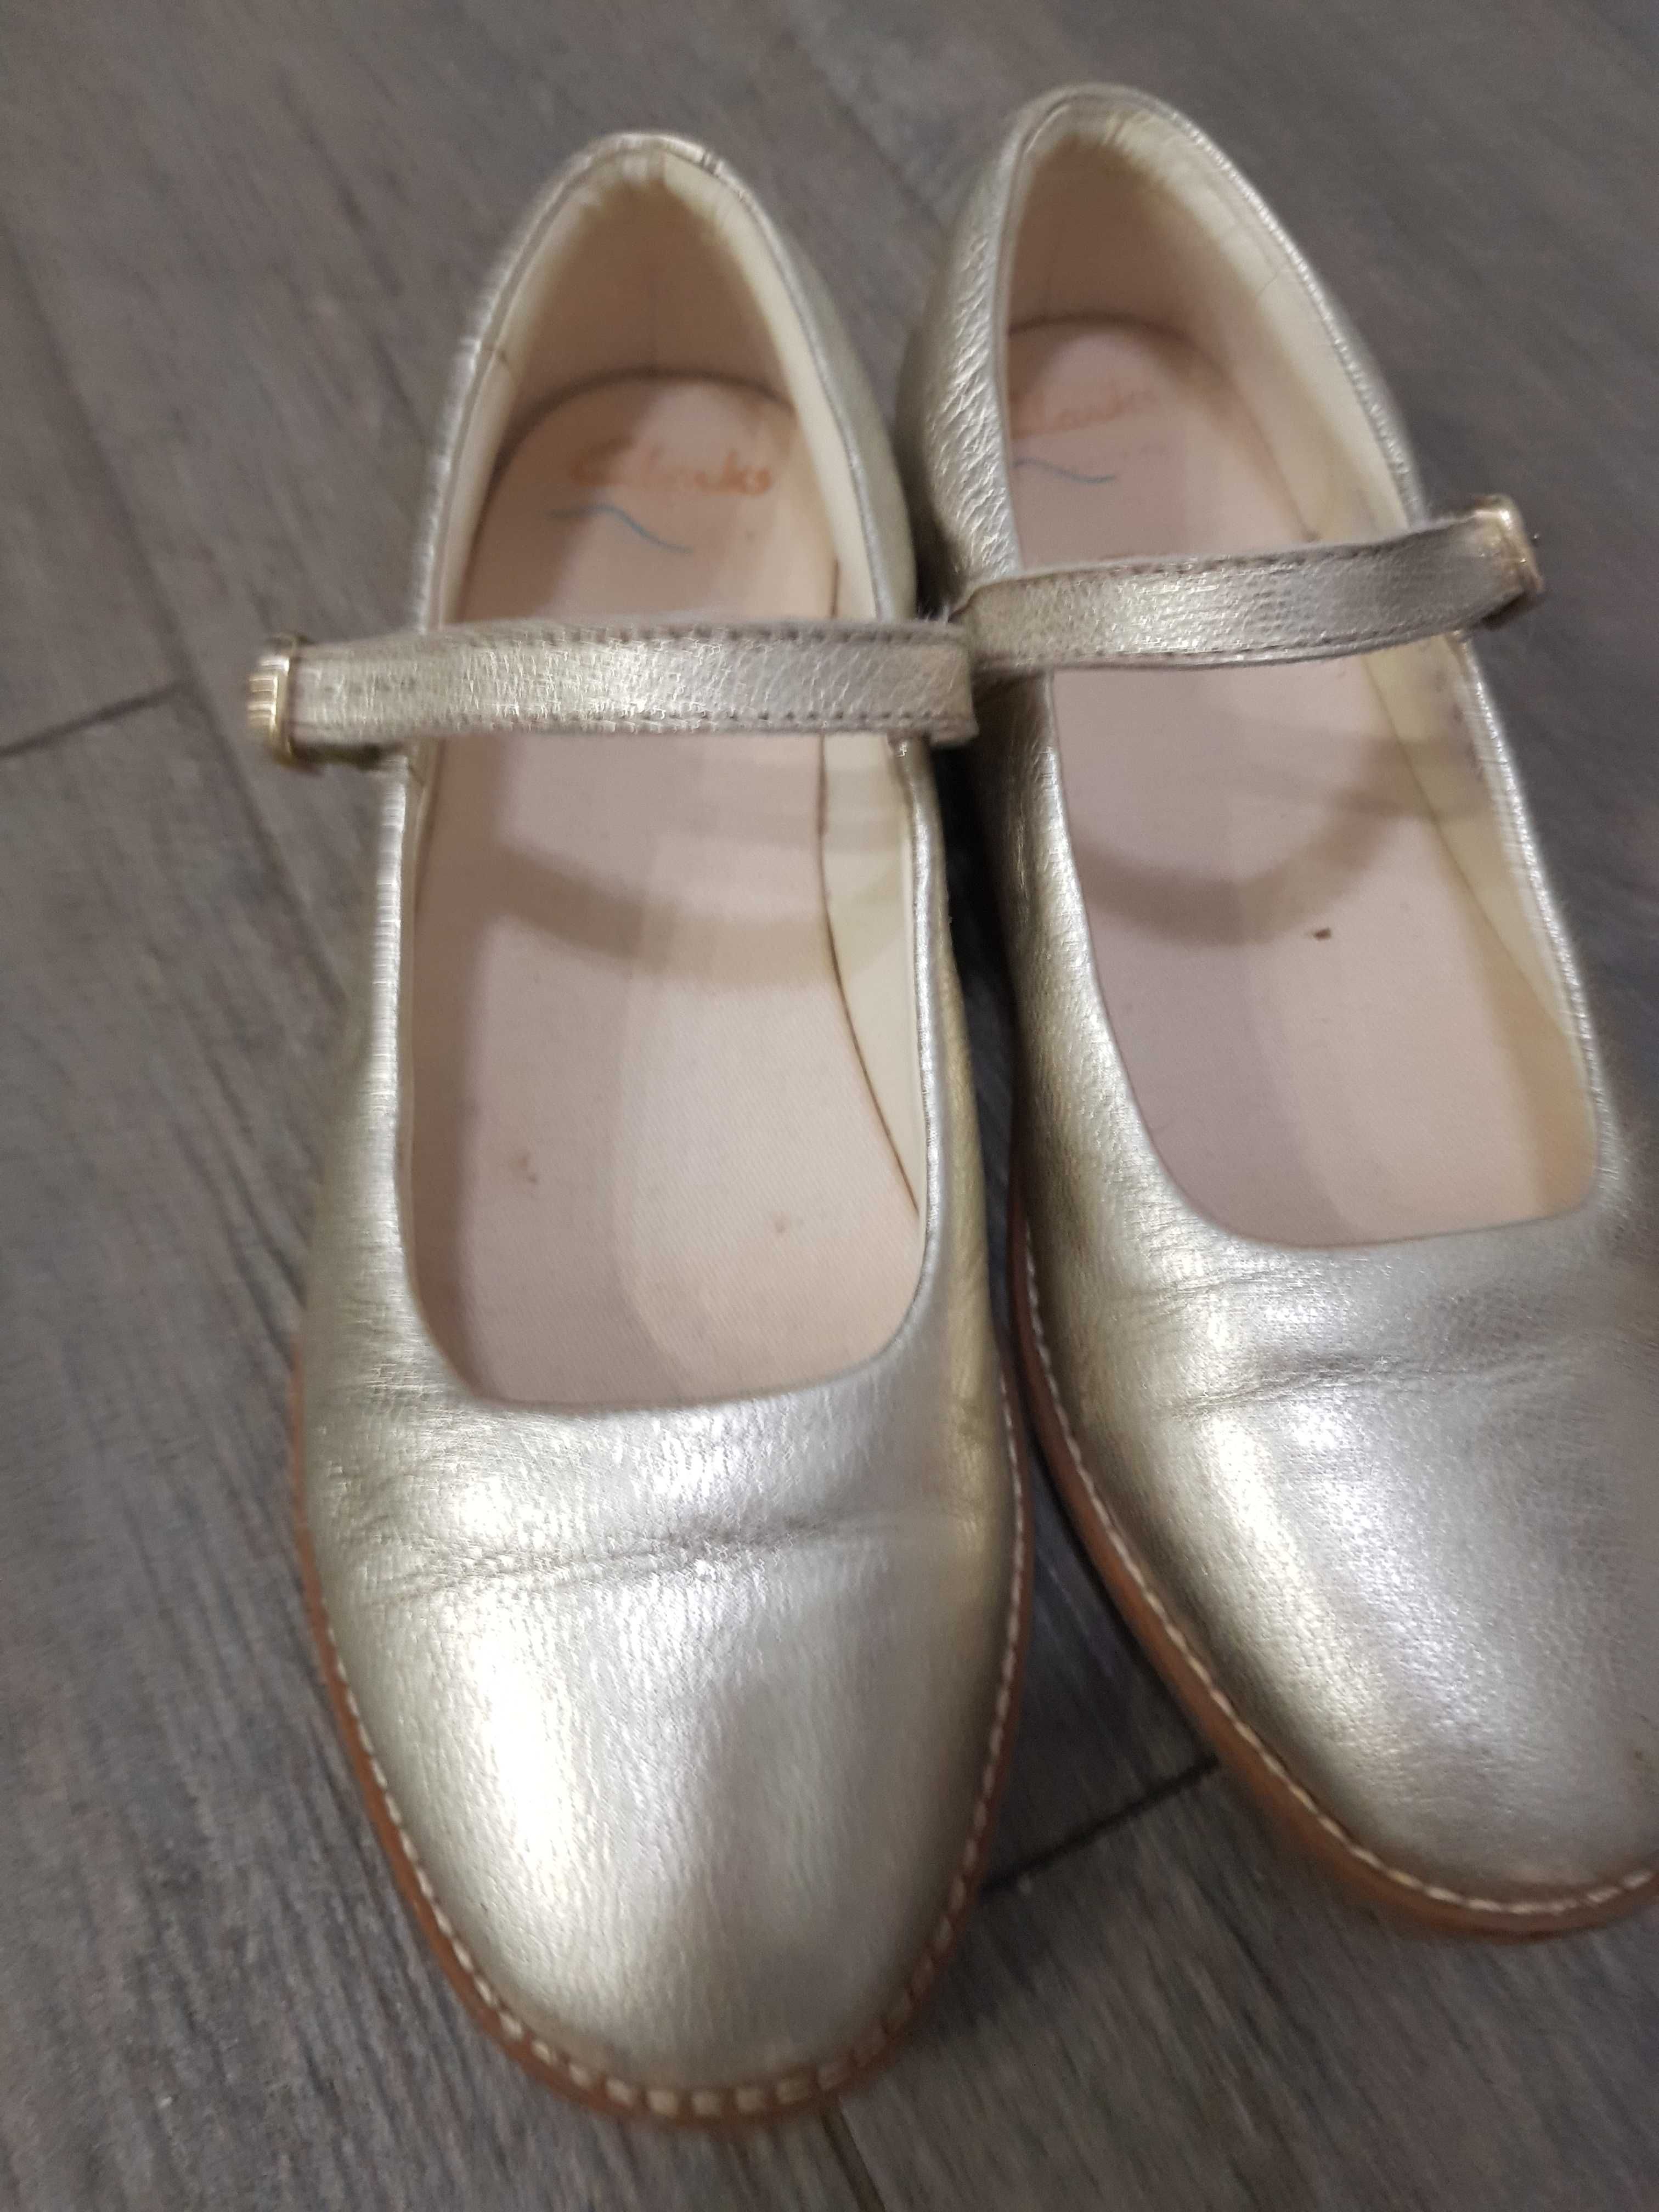 Маркови обувки за 6-7г момиче - Clarks, Skechers, High Colorado, LOTTO